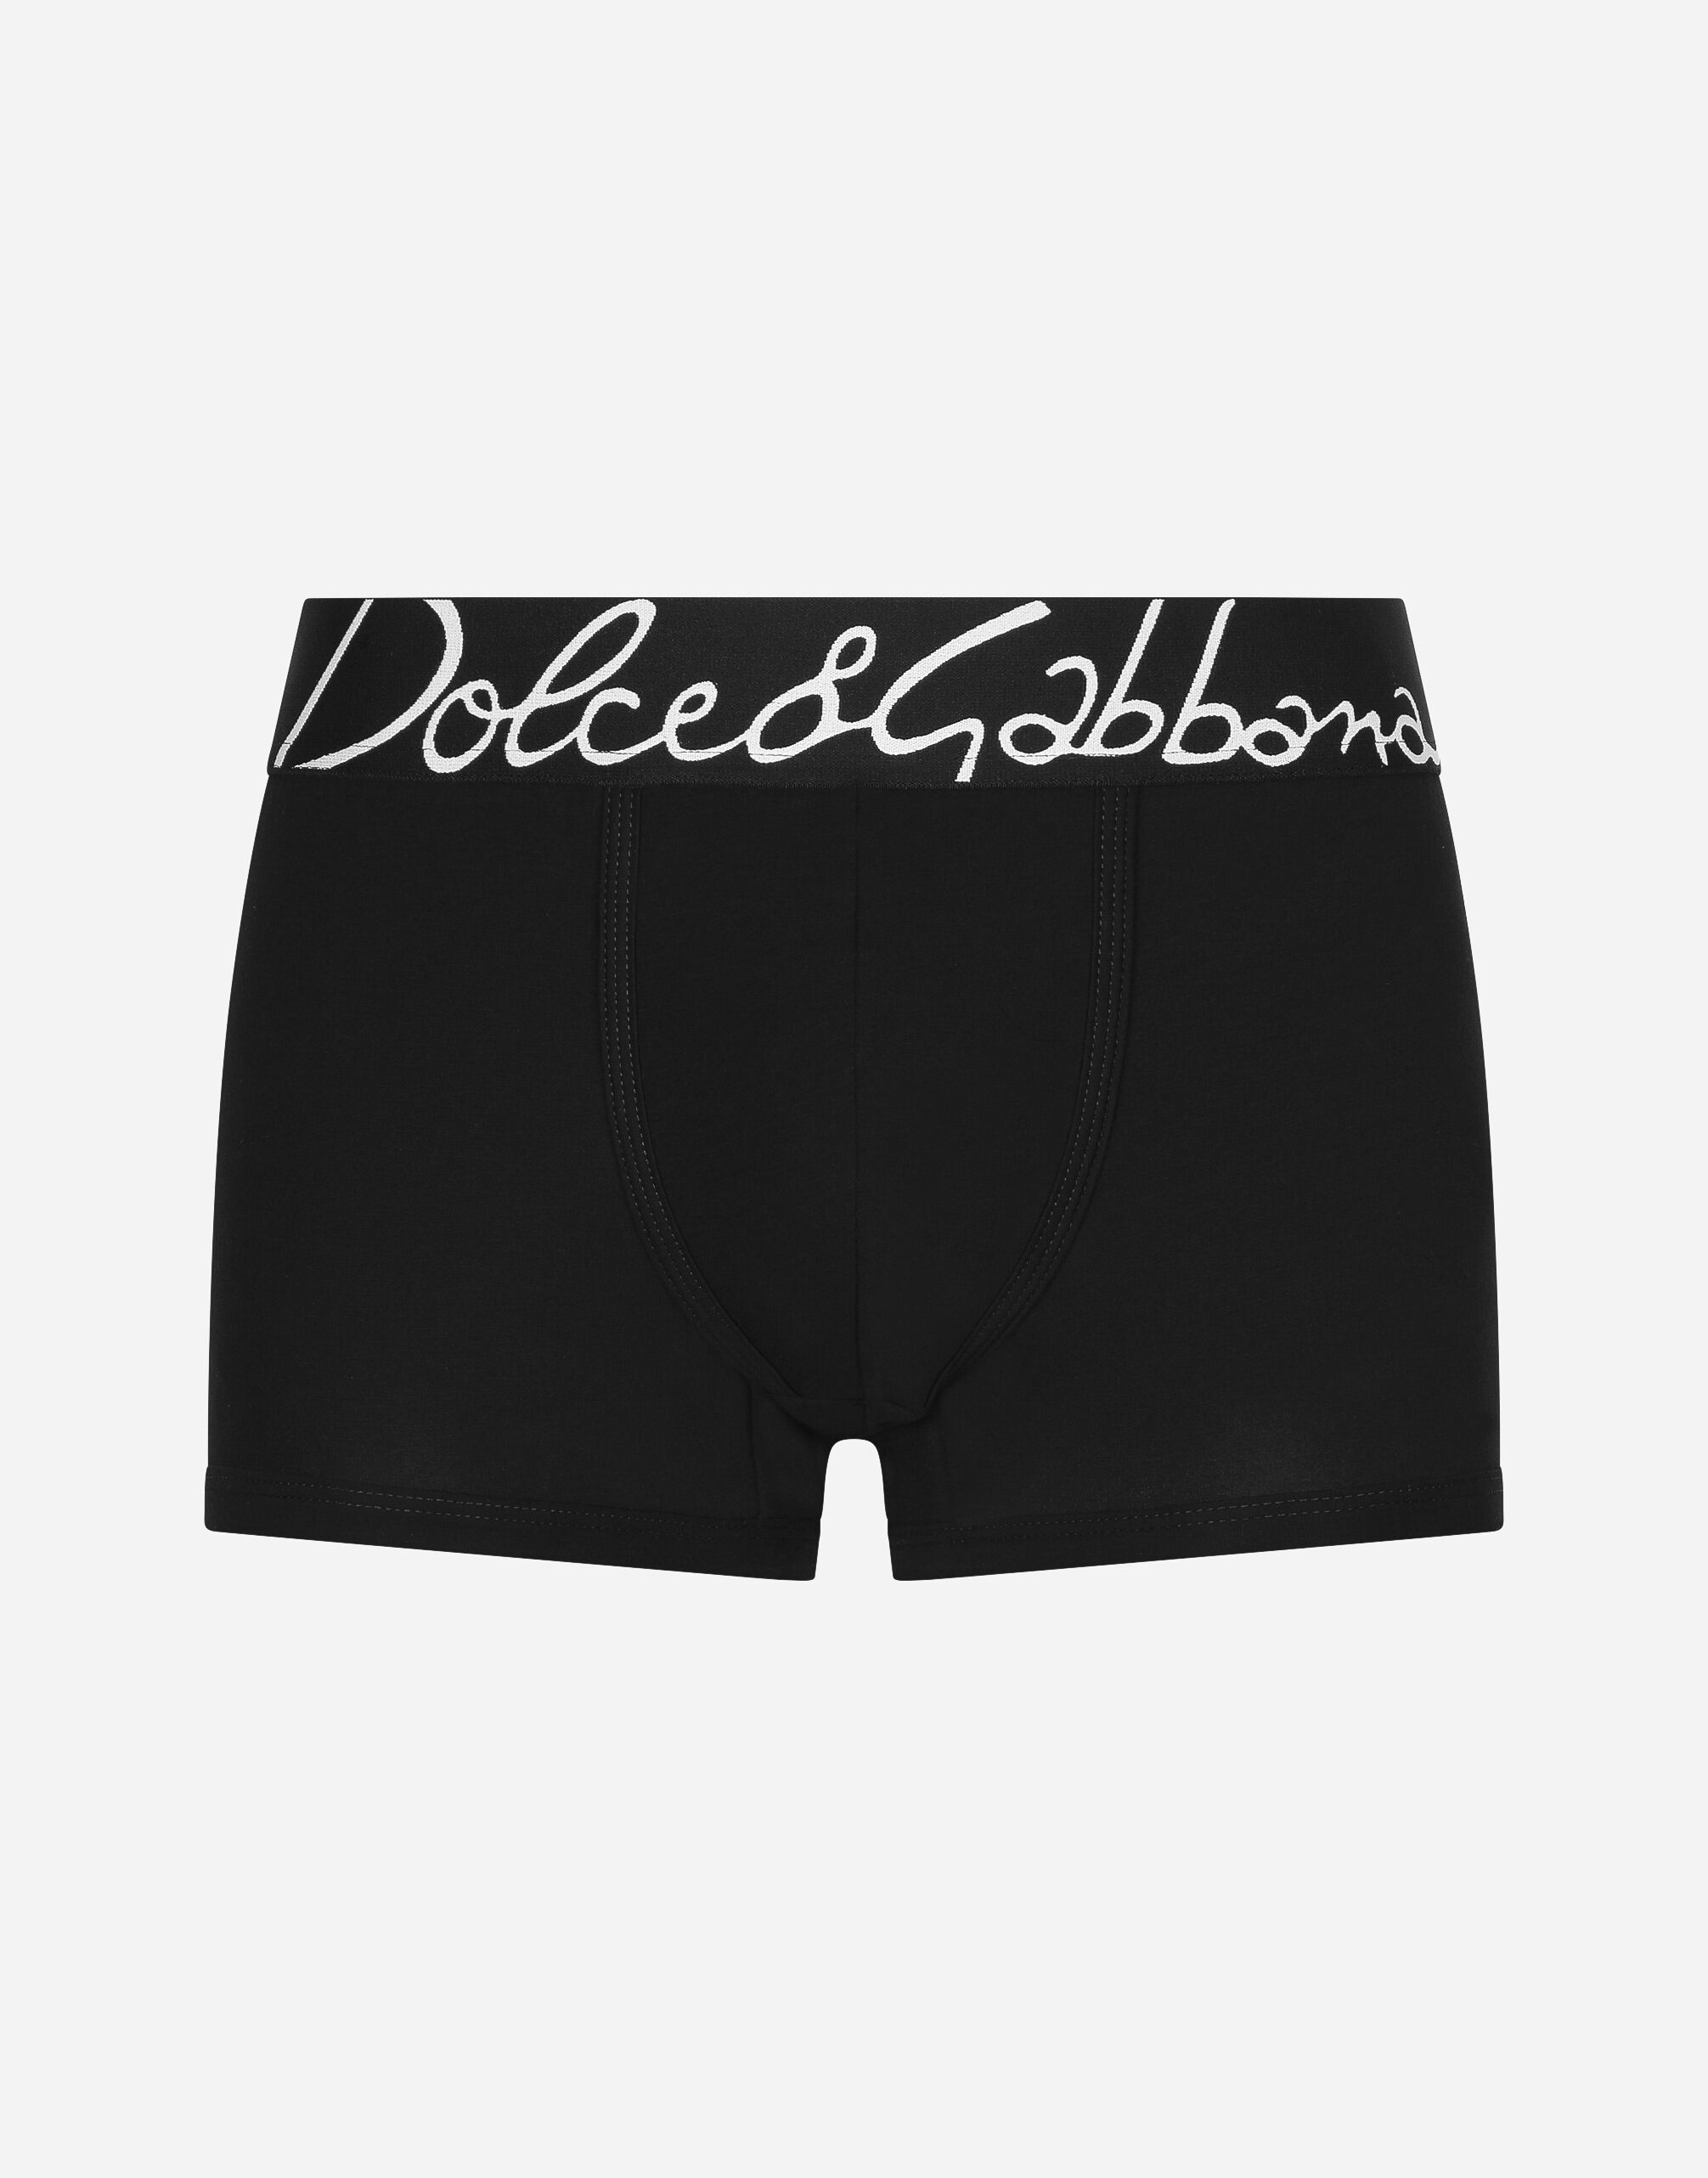 DOLCE & GABBANA Underwear White Cotton Stretch Regular Boxer IT3 / US XS  $130